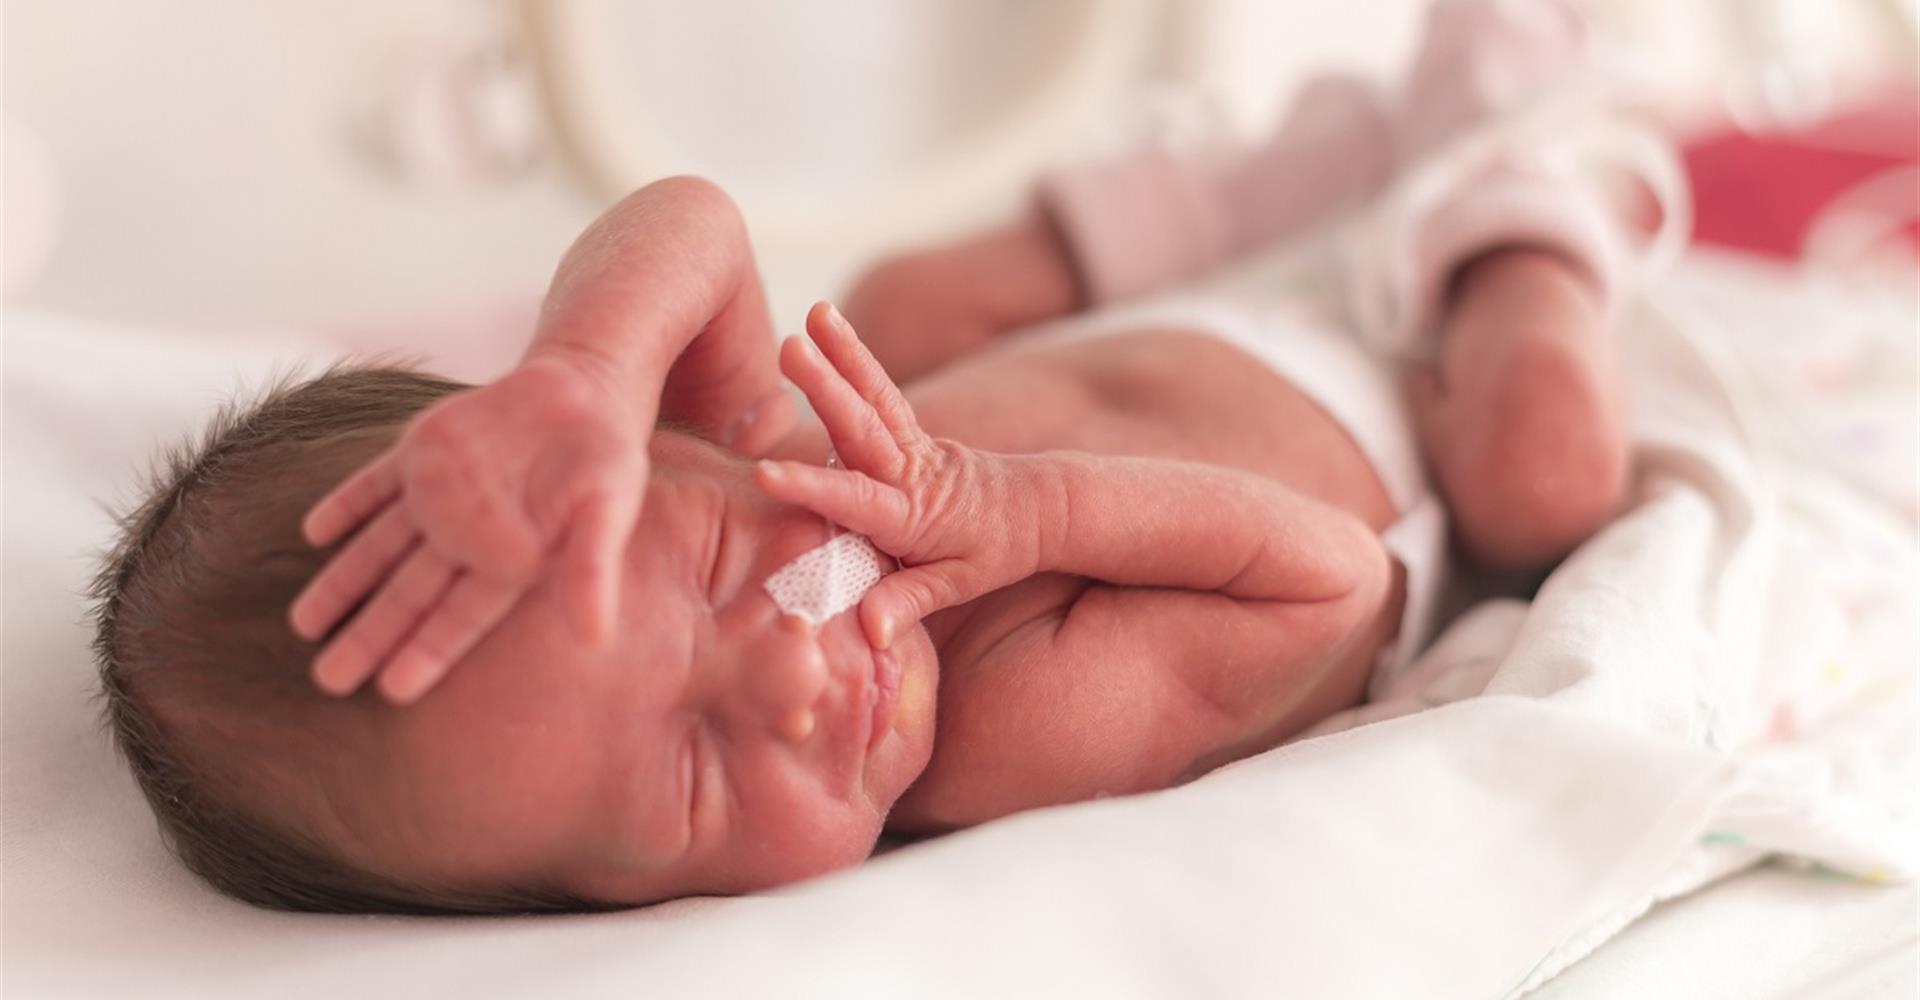 Come pregare per la salute di un neonato prematuro e per la madre